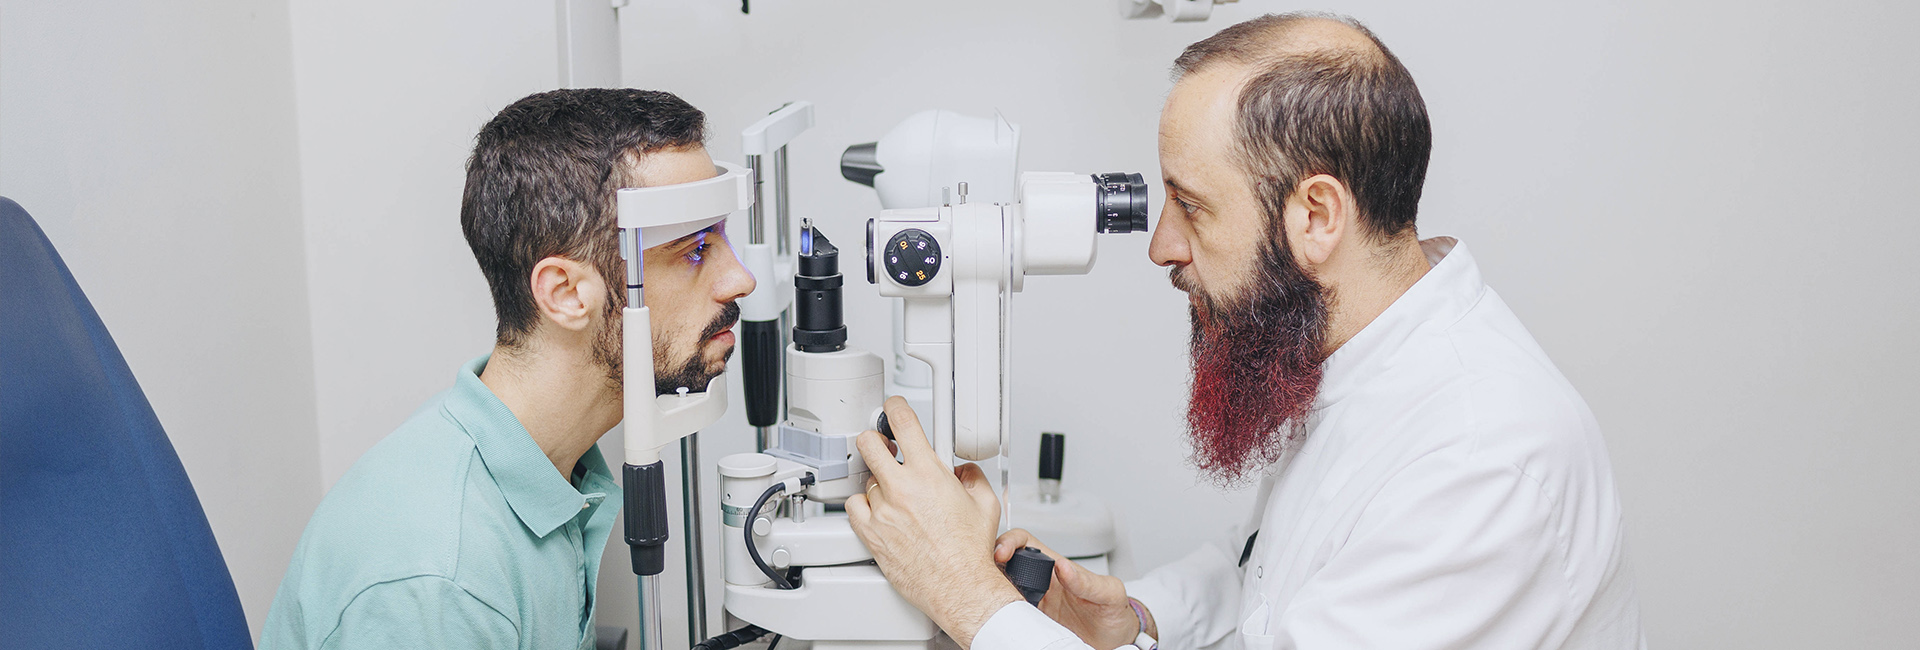 examen personalitzat optometria tecnologia avançada